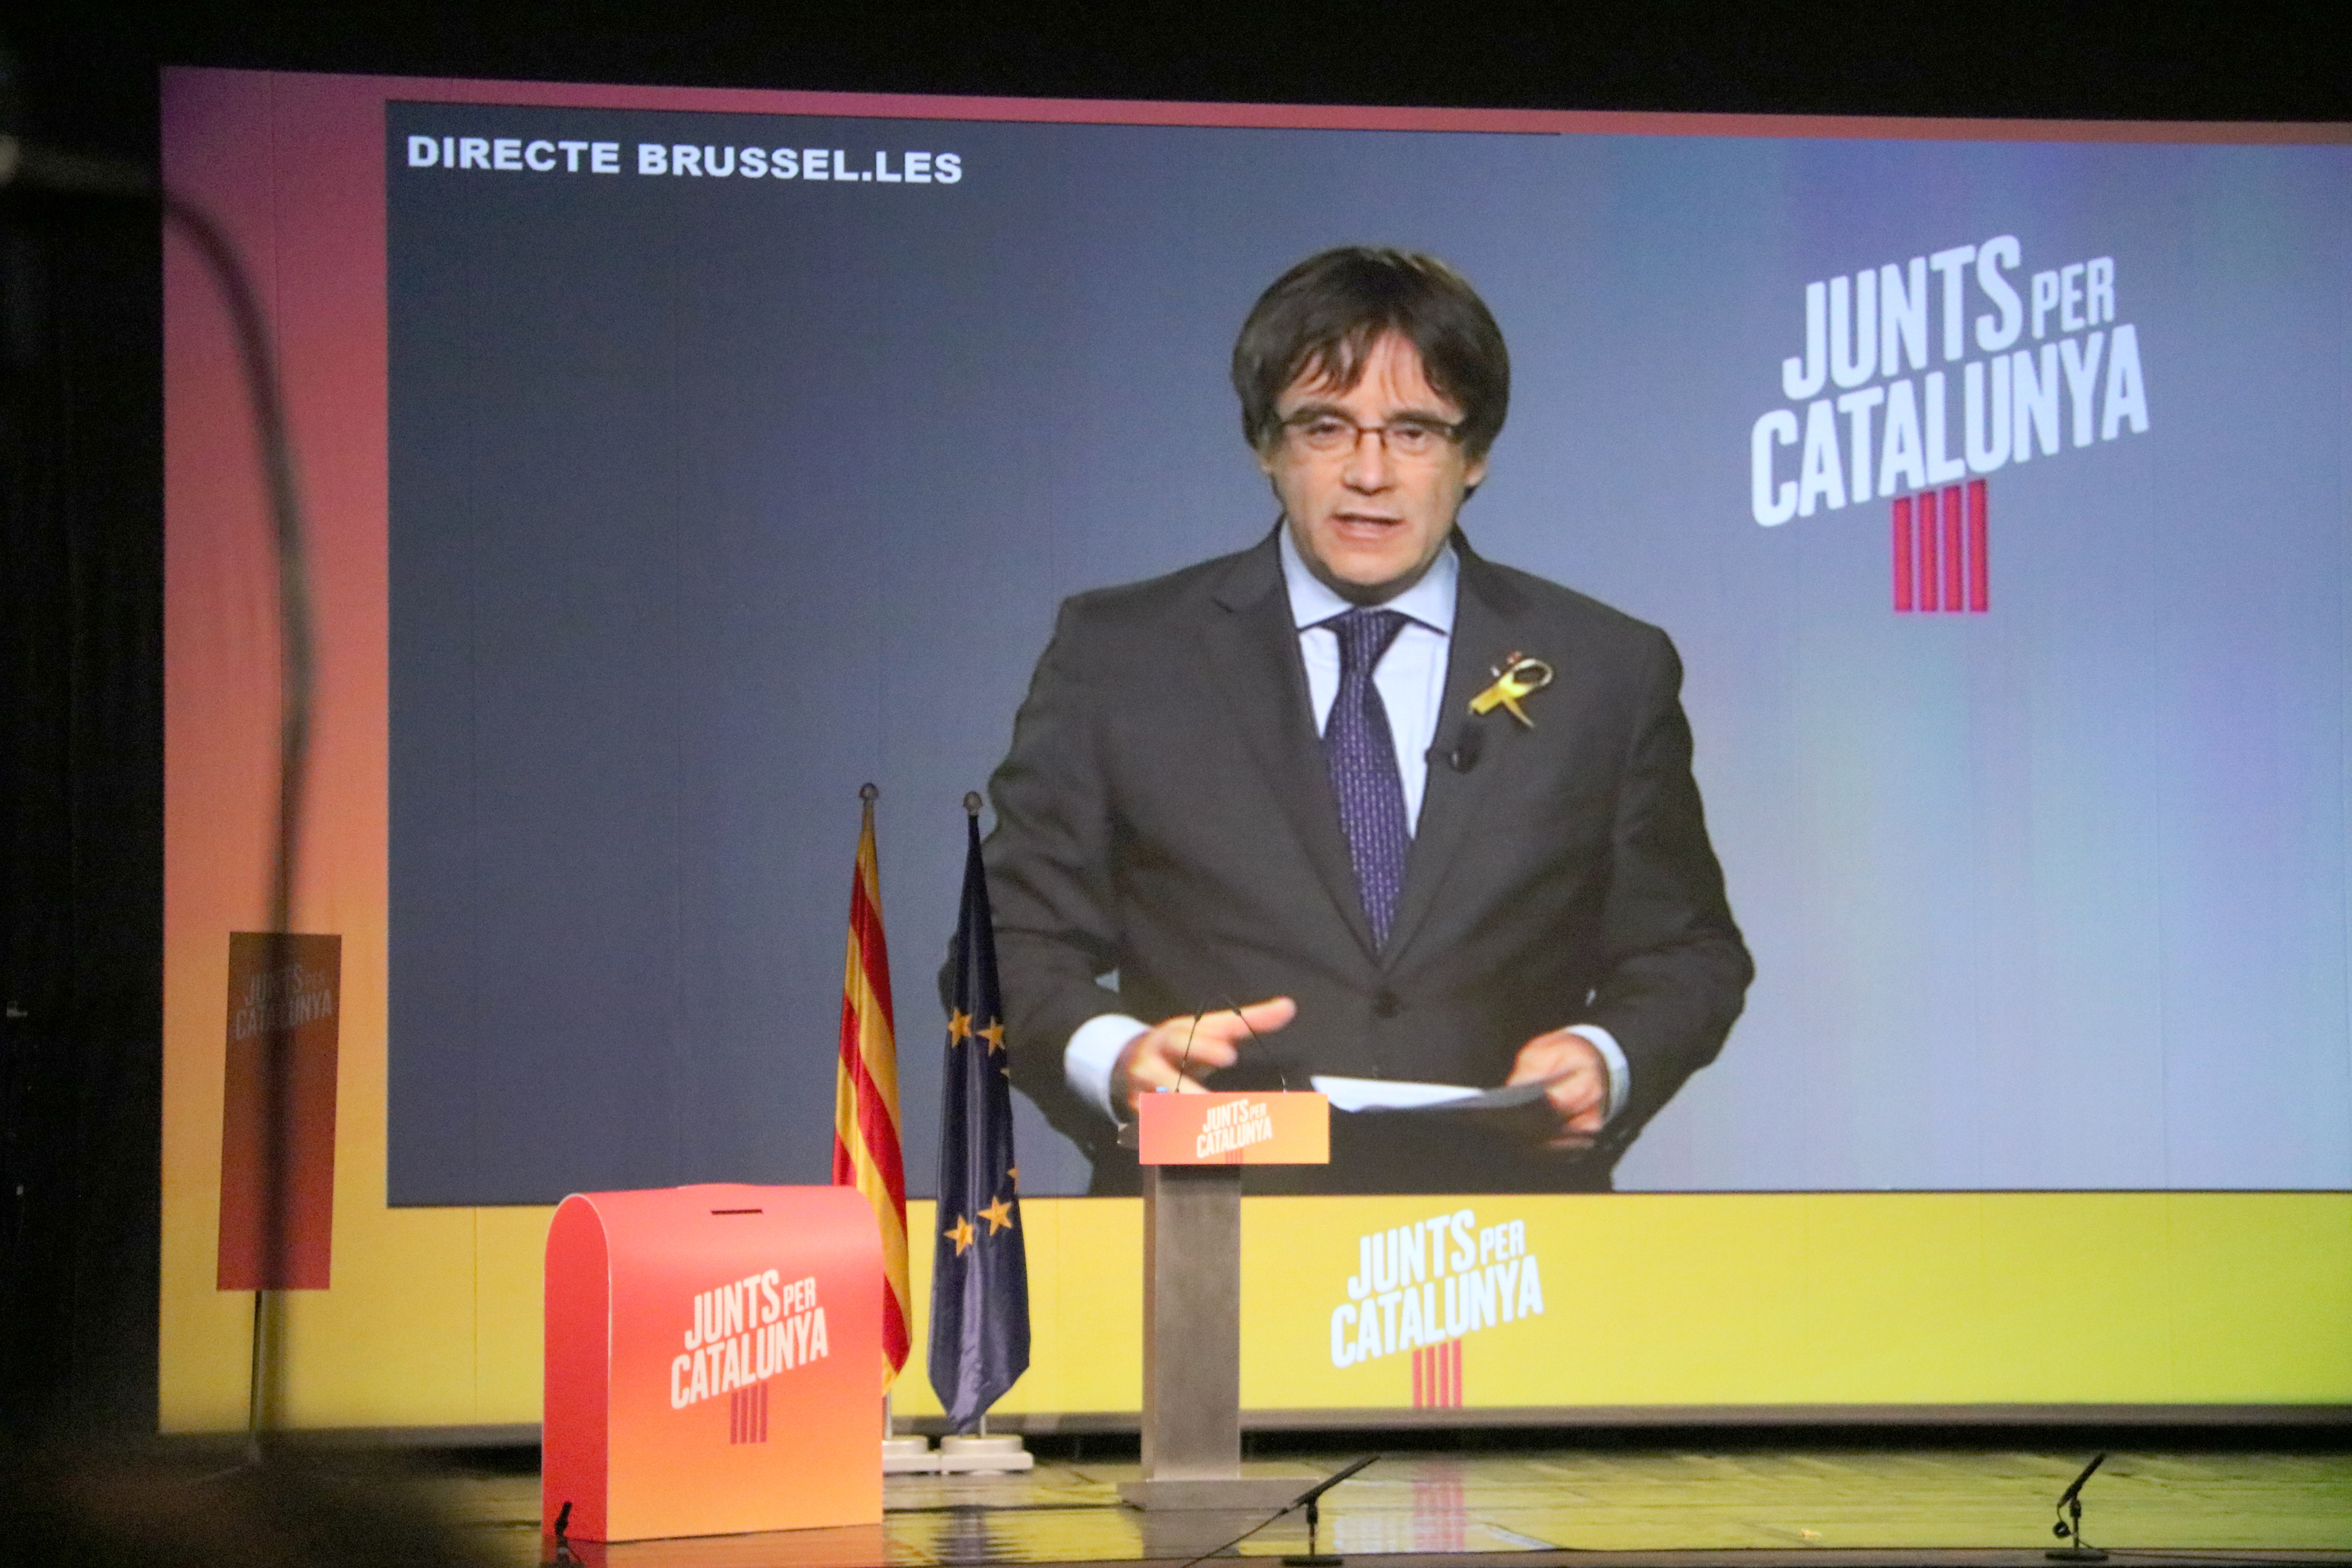 Carles Puigdemont intervé als mitins de JxCat per videoconferència